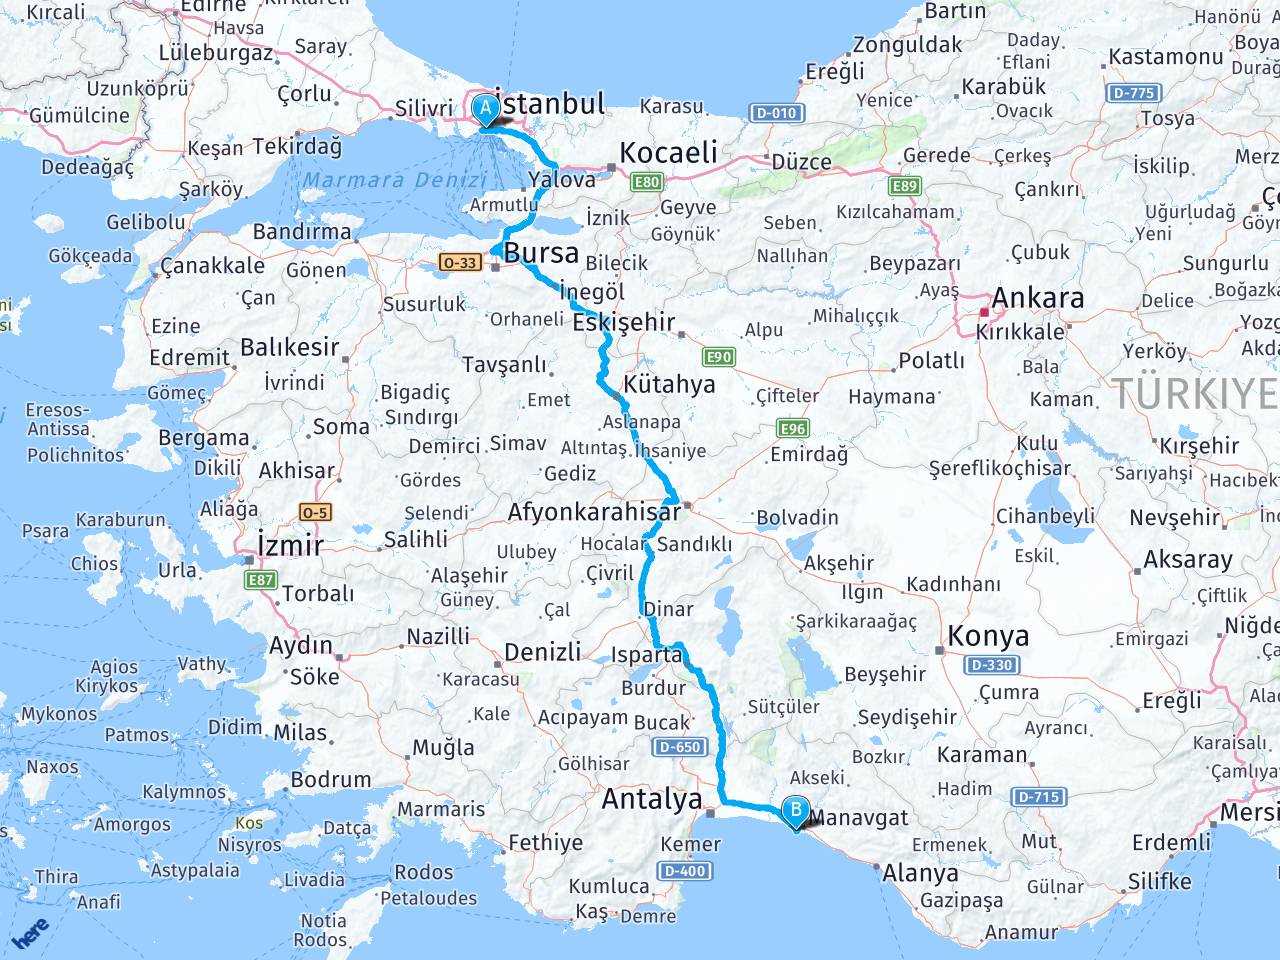 istanbul antalya side arasi mesafe istanbul antalya side yol haritasi istanbul antalya side kac saat kac km